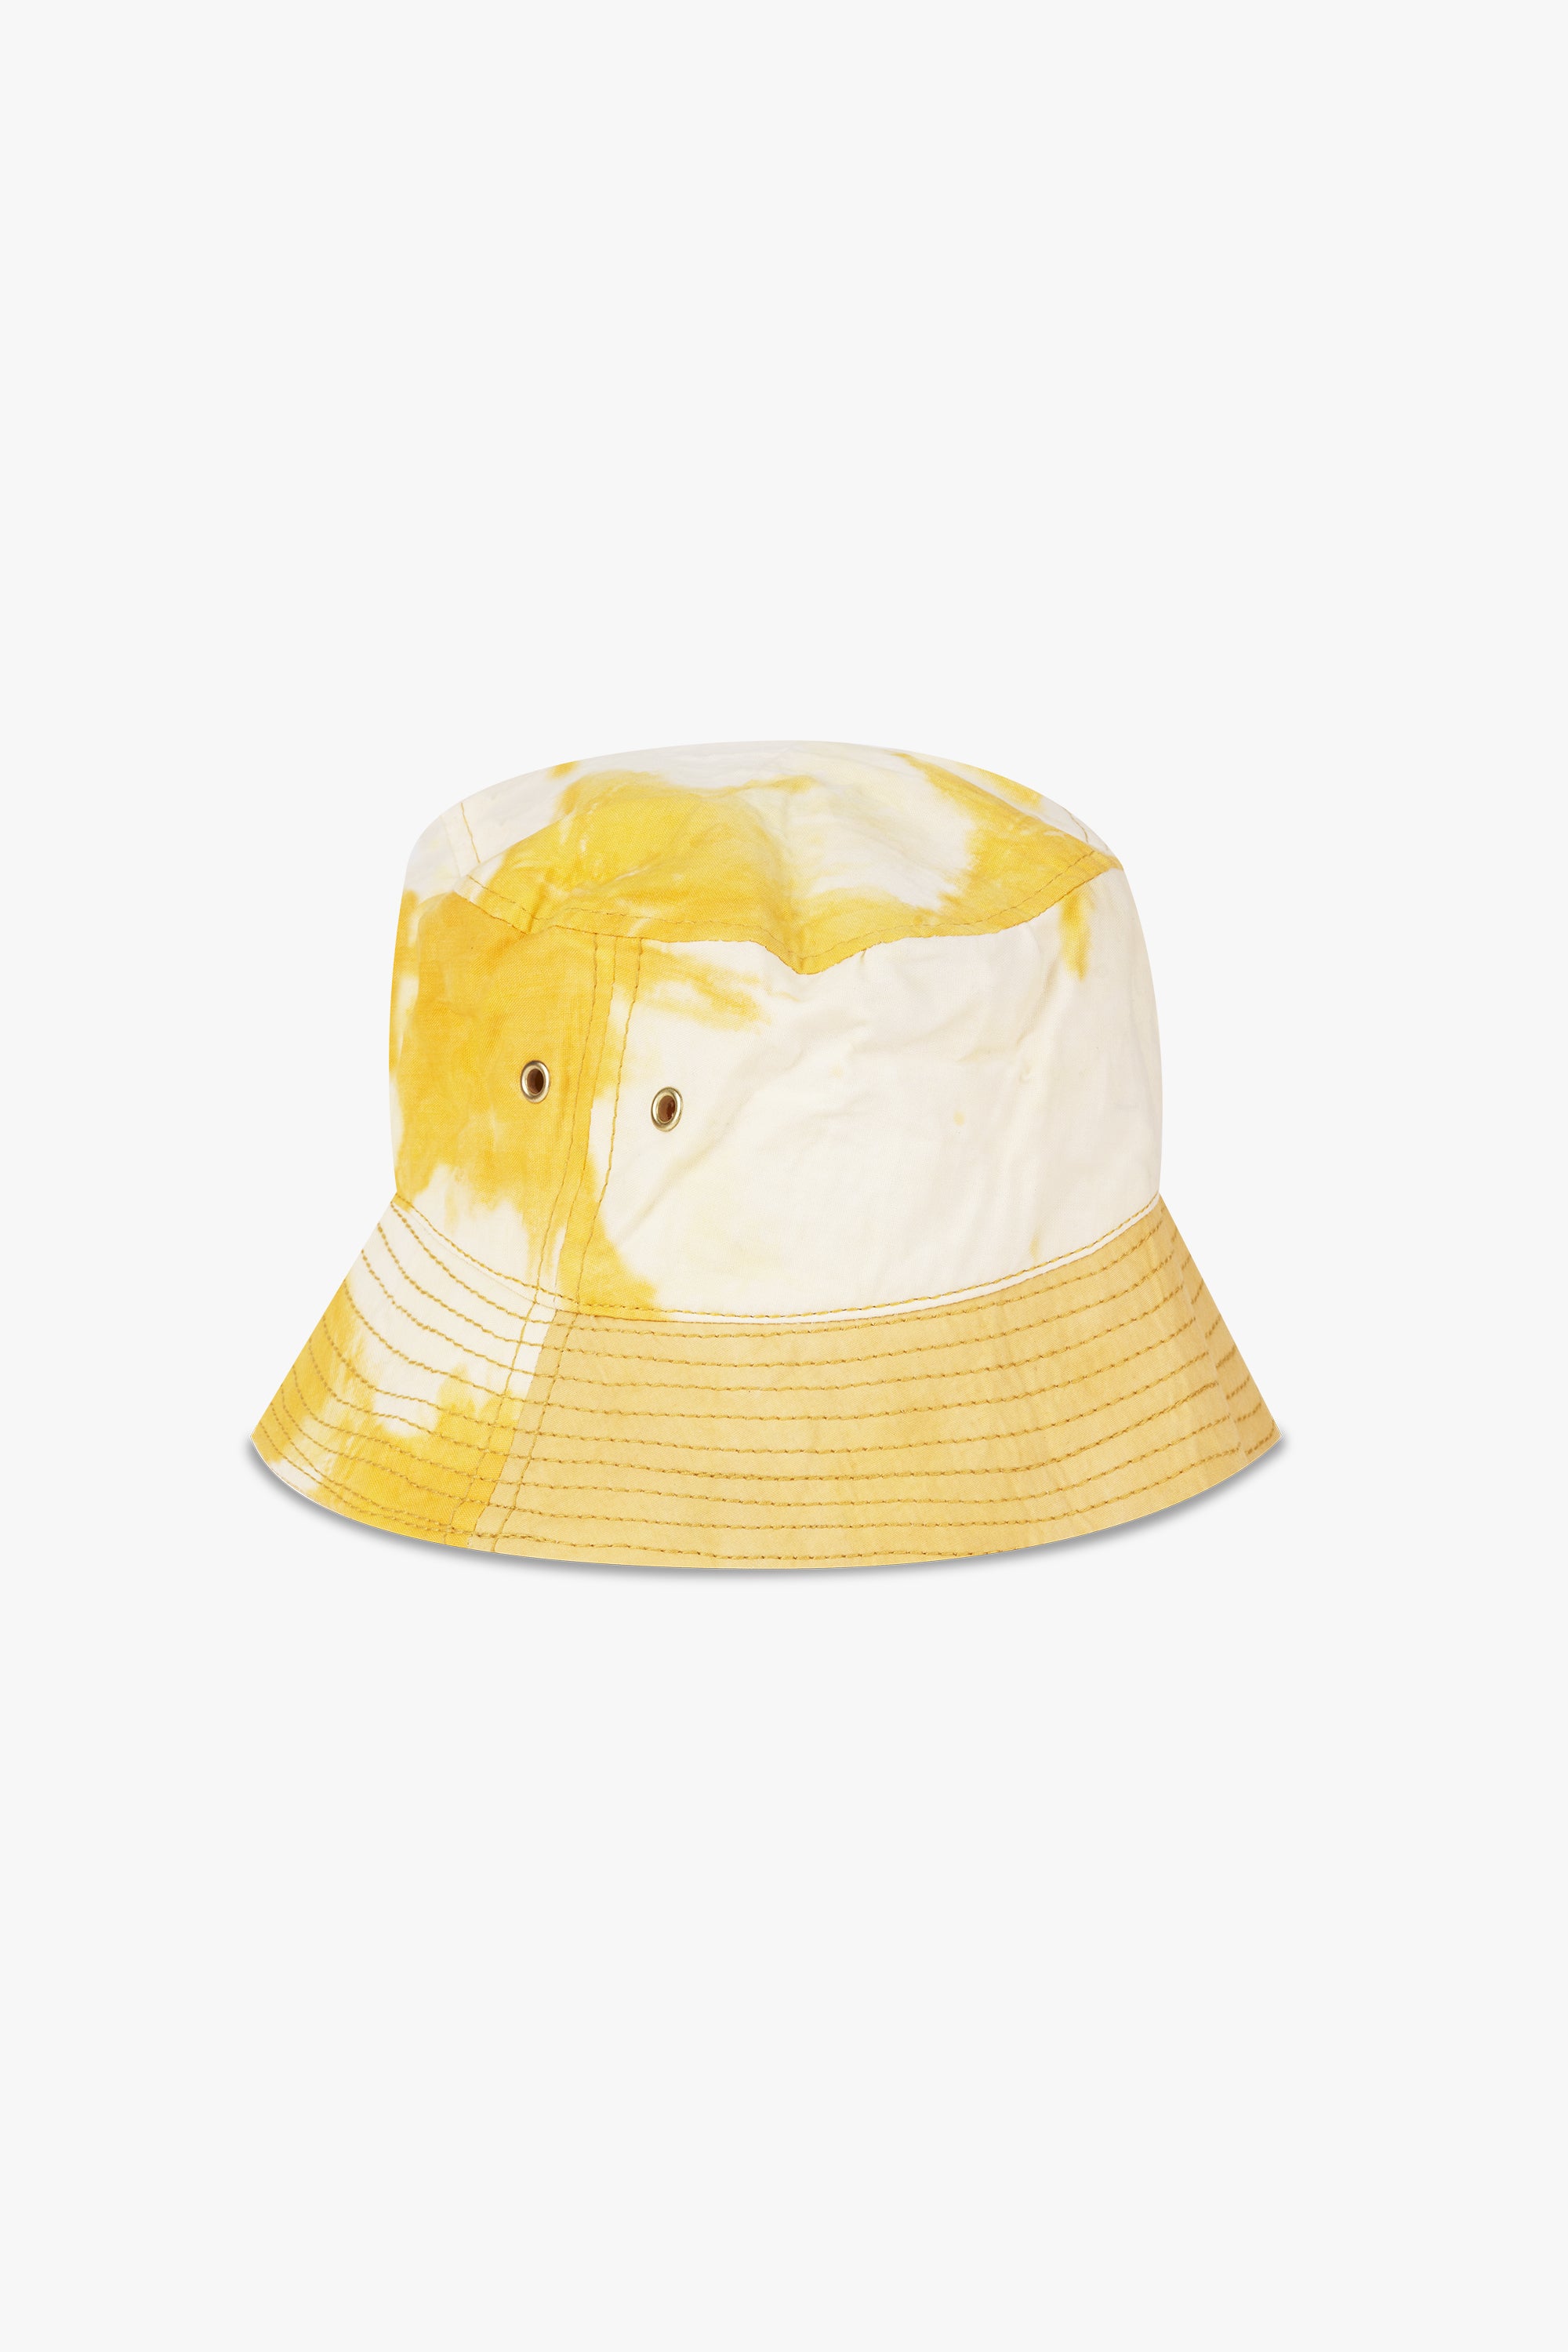 Tie-Dye Bucket Hat Yellow